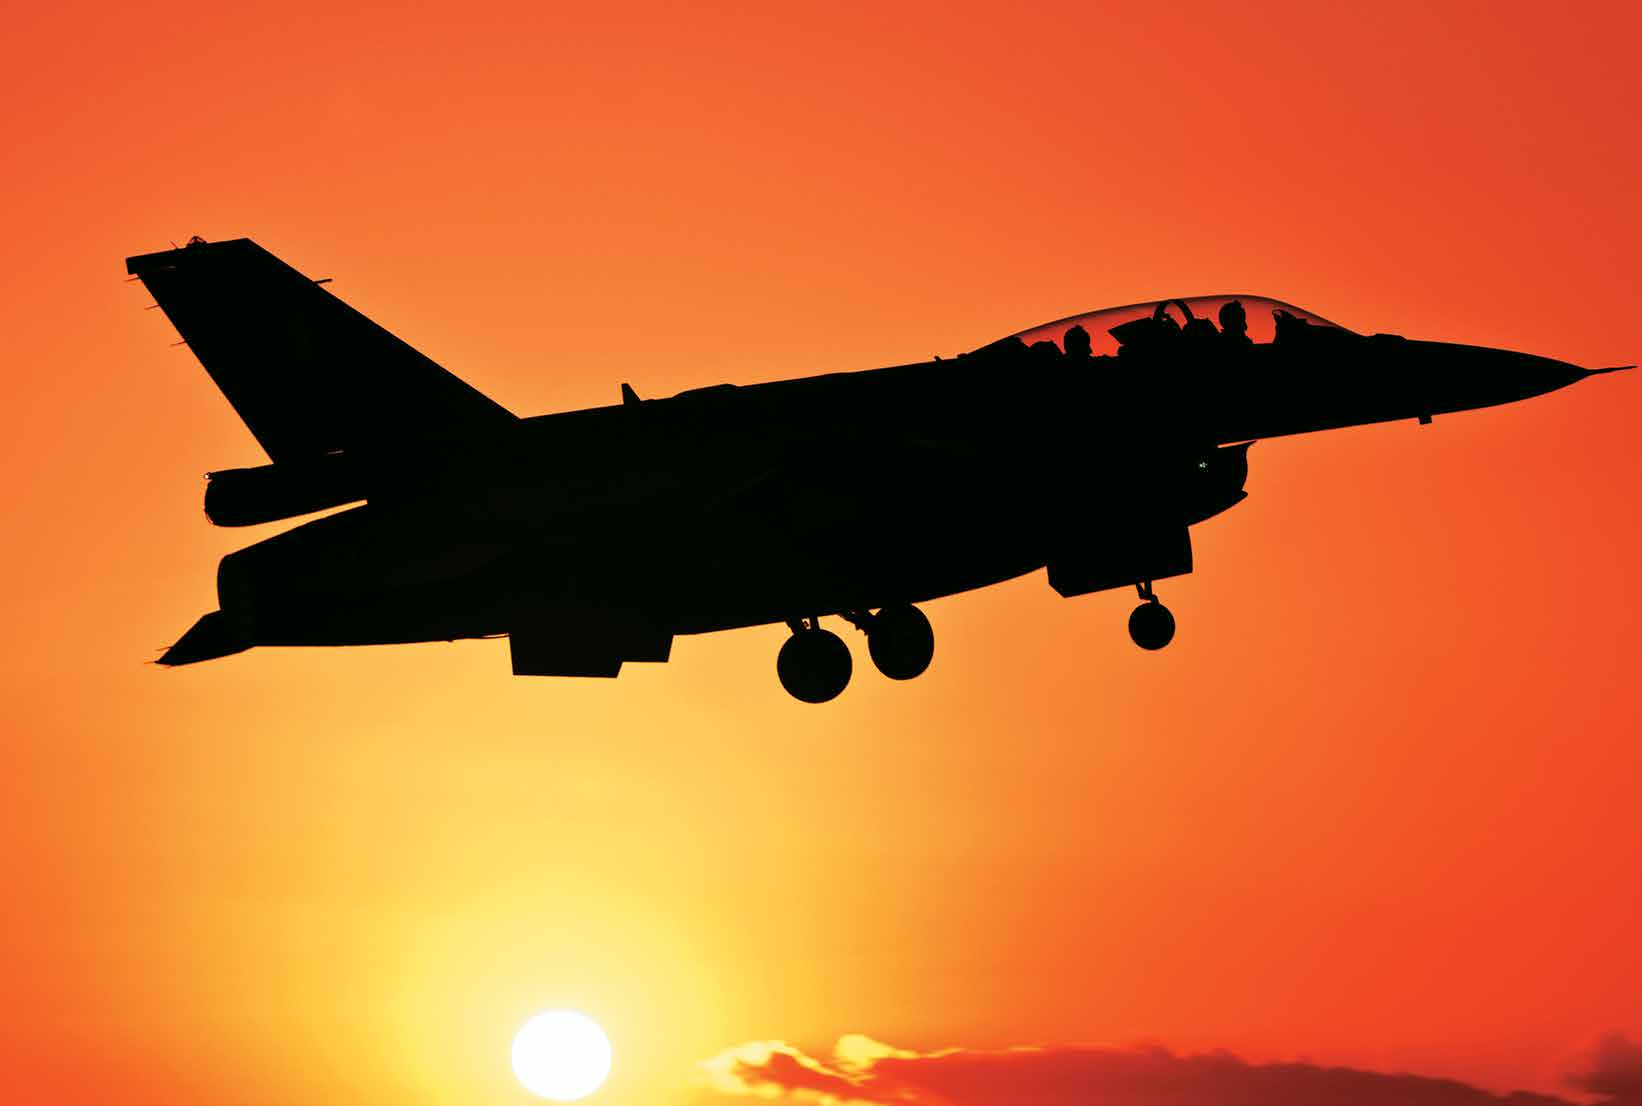 Ελληνική Πολεμική Αεροπορία 2025 Ορίζοντας μαχητικής ισχύος Σε πρόσφατο άρθρο μας είχαμε αναφερθεί στην επικαιροποίηση των αναγκών της Πολεμικής Αεροπορίας και στην απόφασή της να εκσυγχρονίσει το